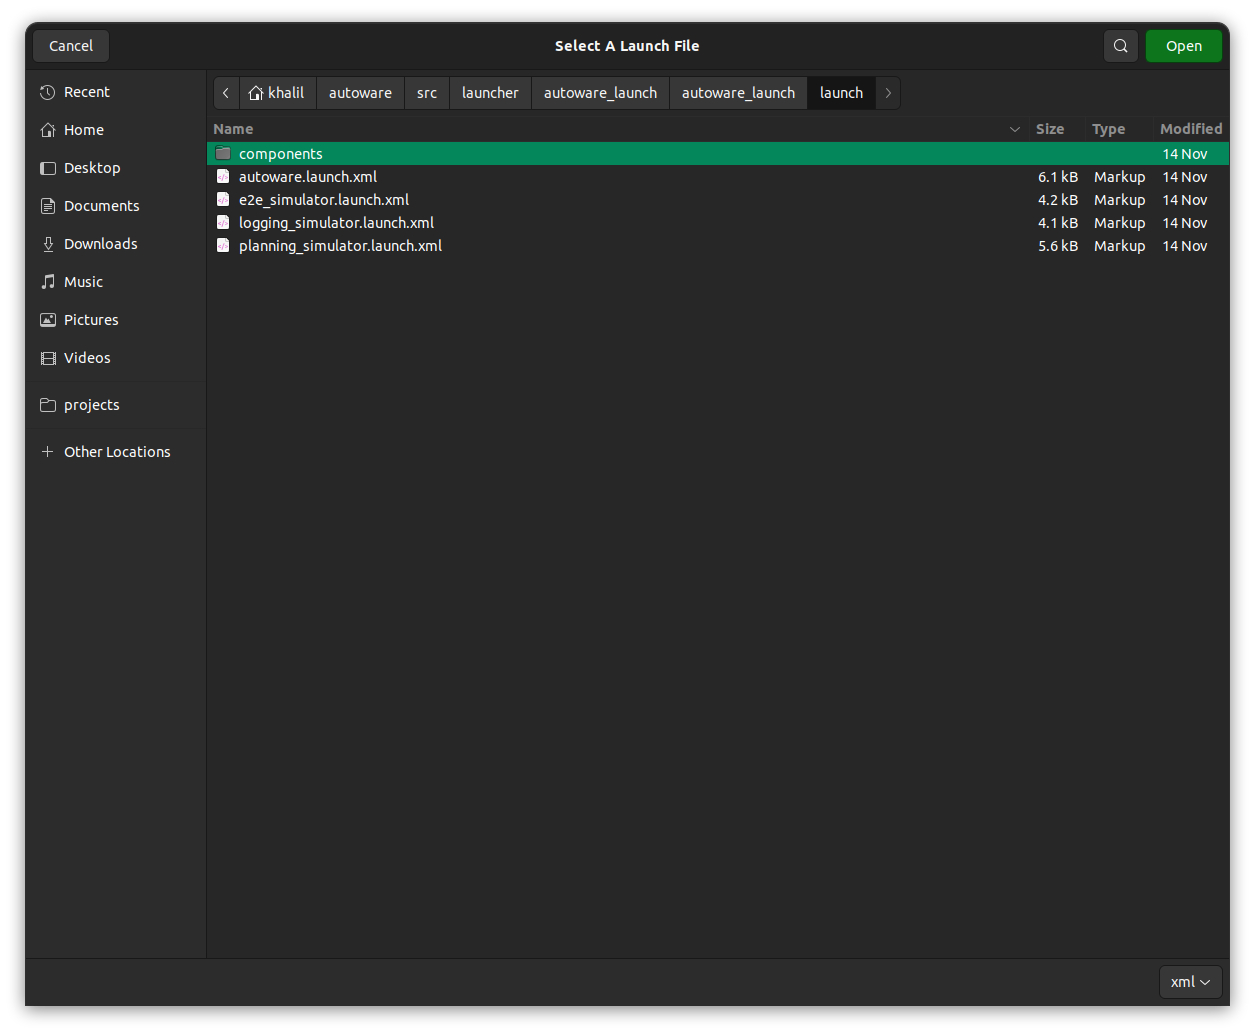 GUI screenshot for selecting launch file